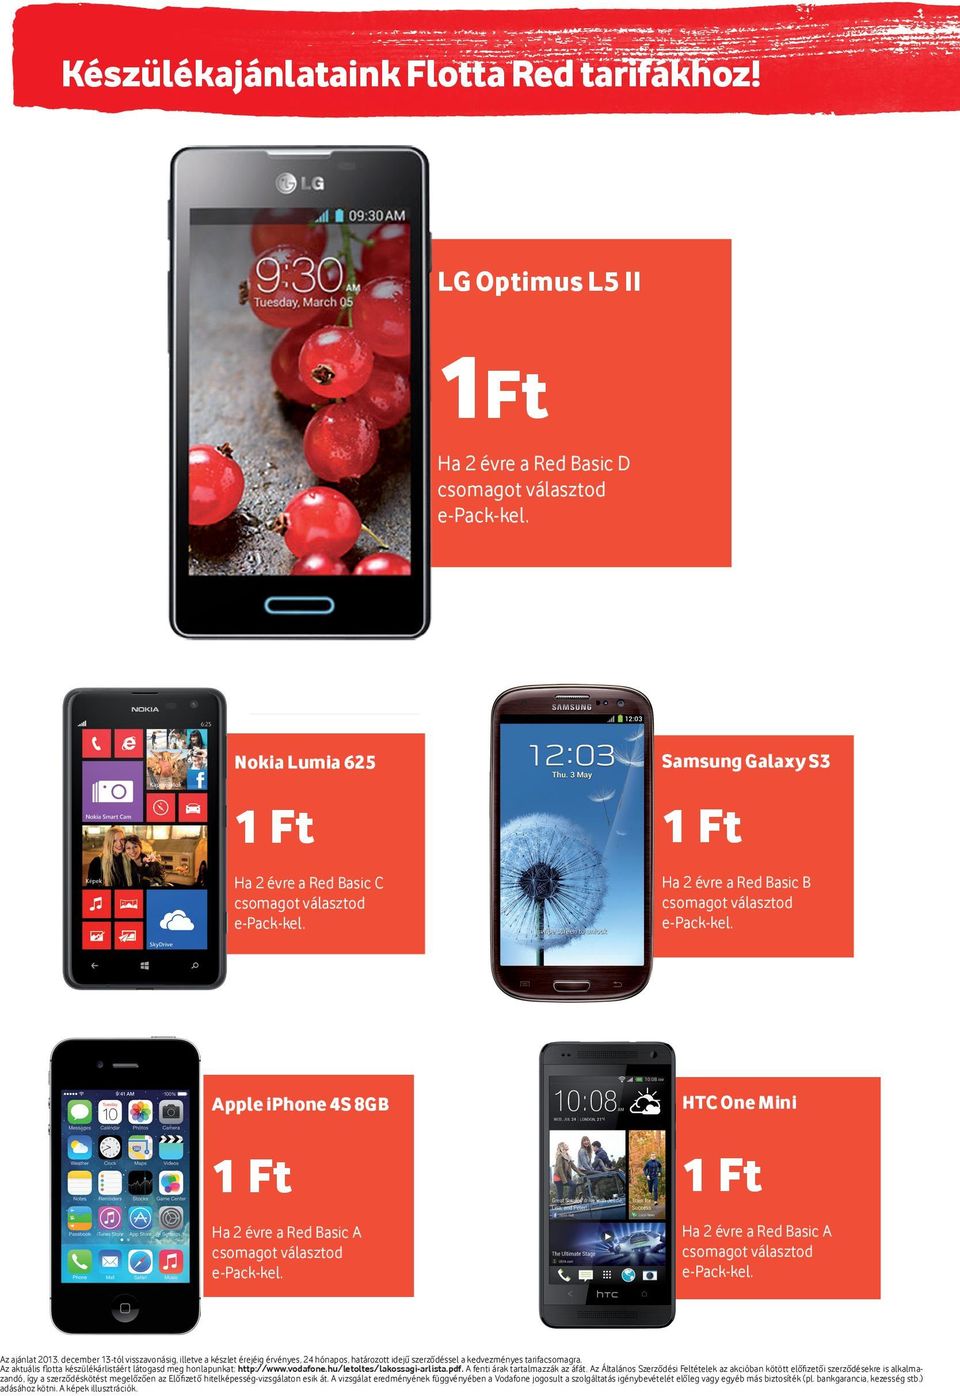 HTC One Mini 1 Ft Ha 2 évre a Red Basic A csomagot választod e-pack-kel. Az ajánlat 2013.